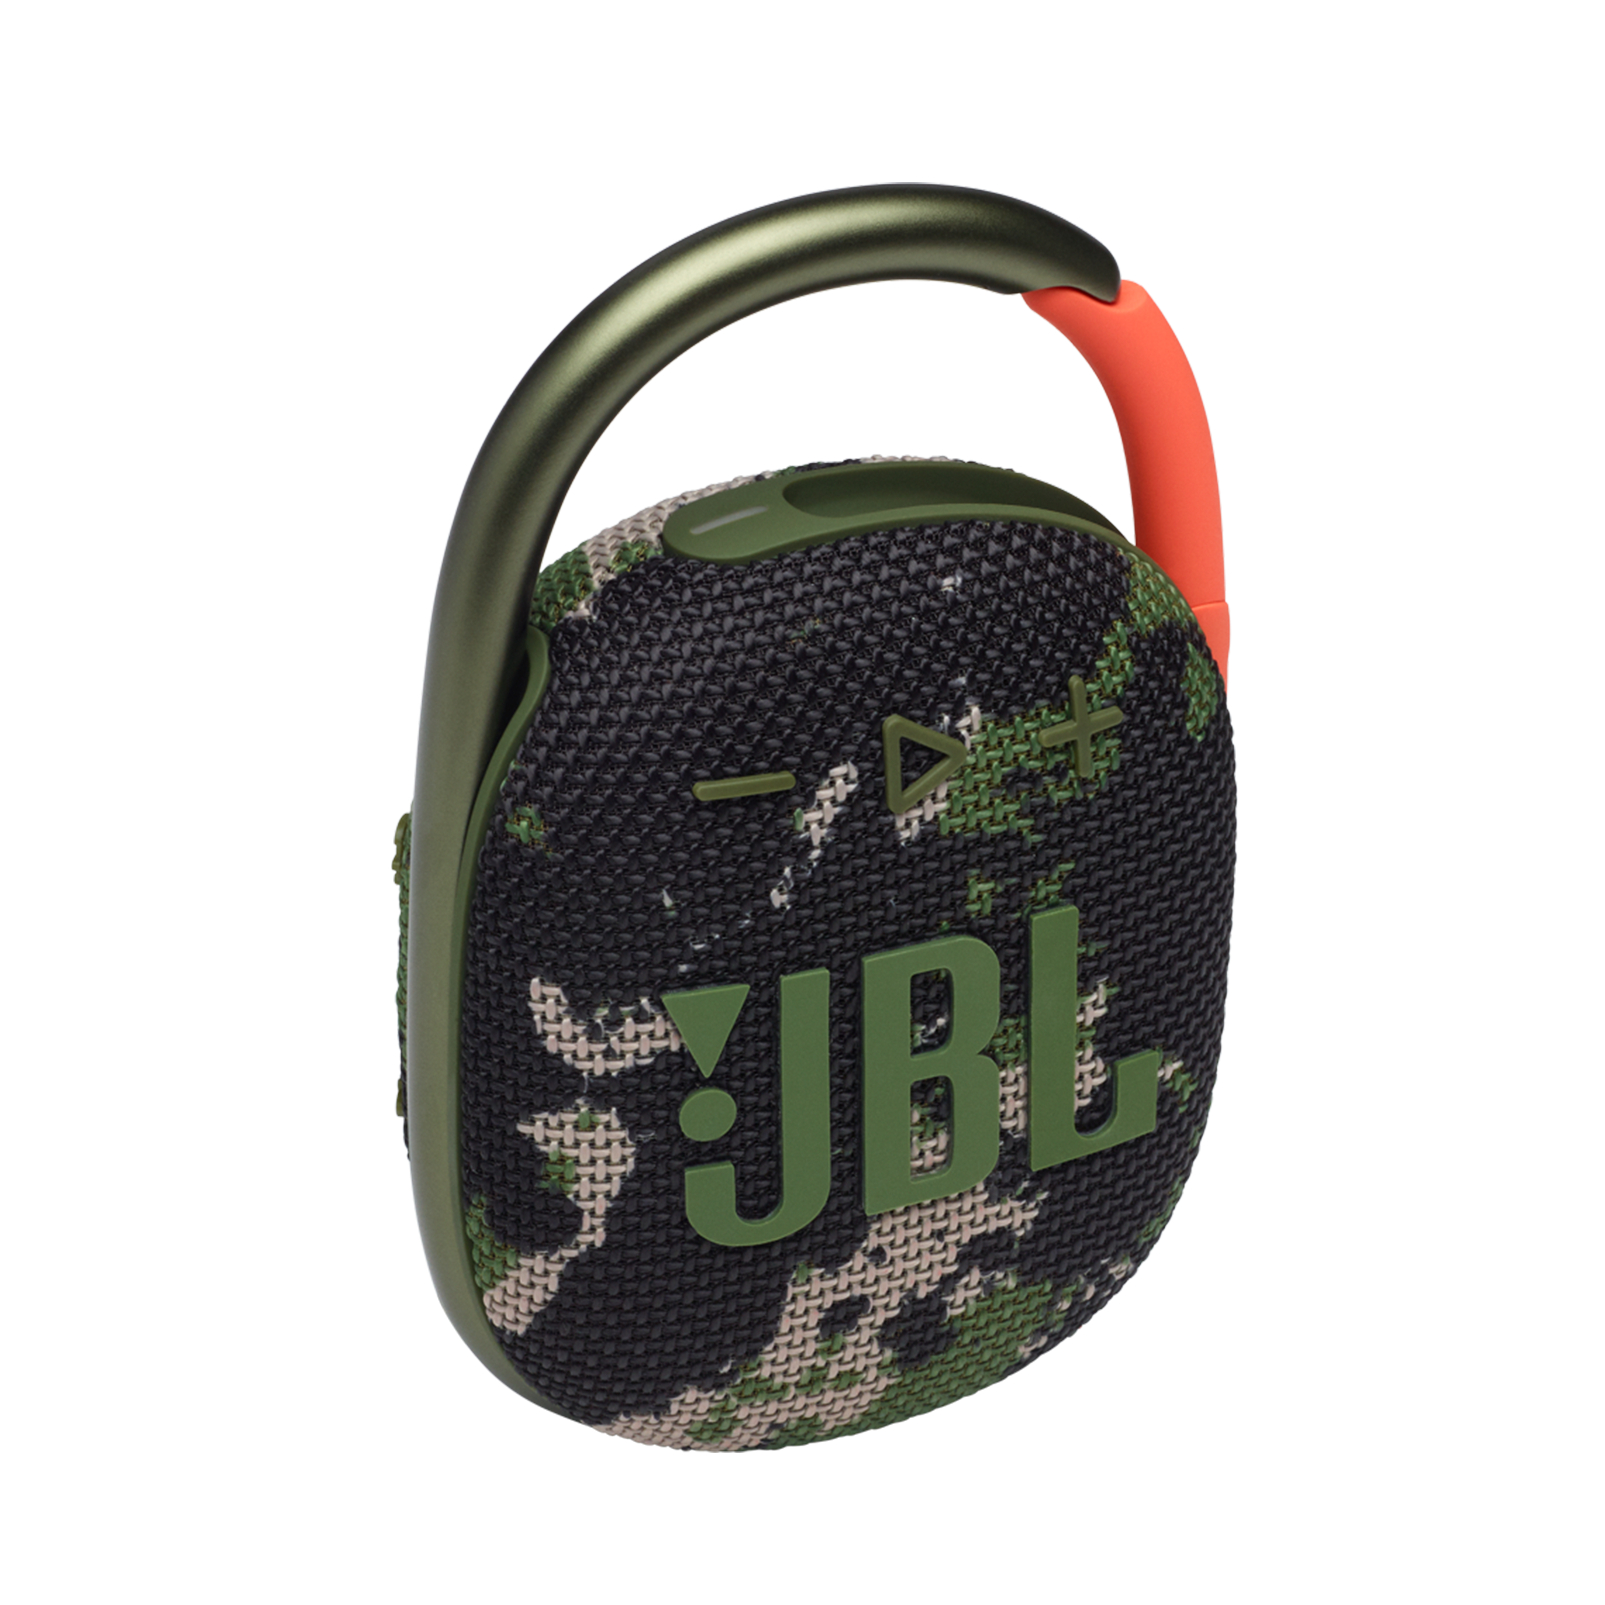 JBL Clip 4 Portable Bluetooth Speaker - Waterproof and Dustproof